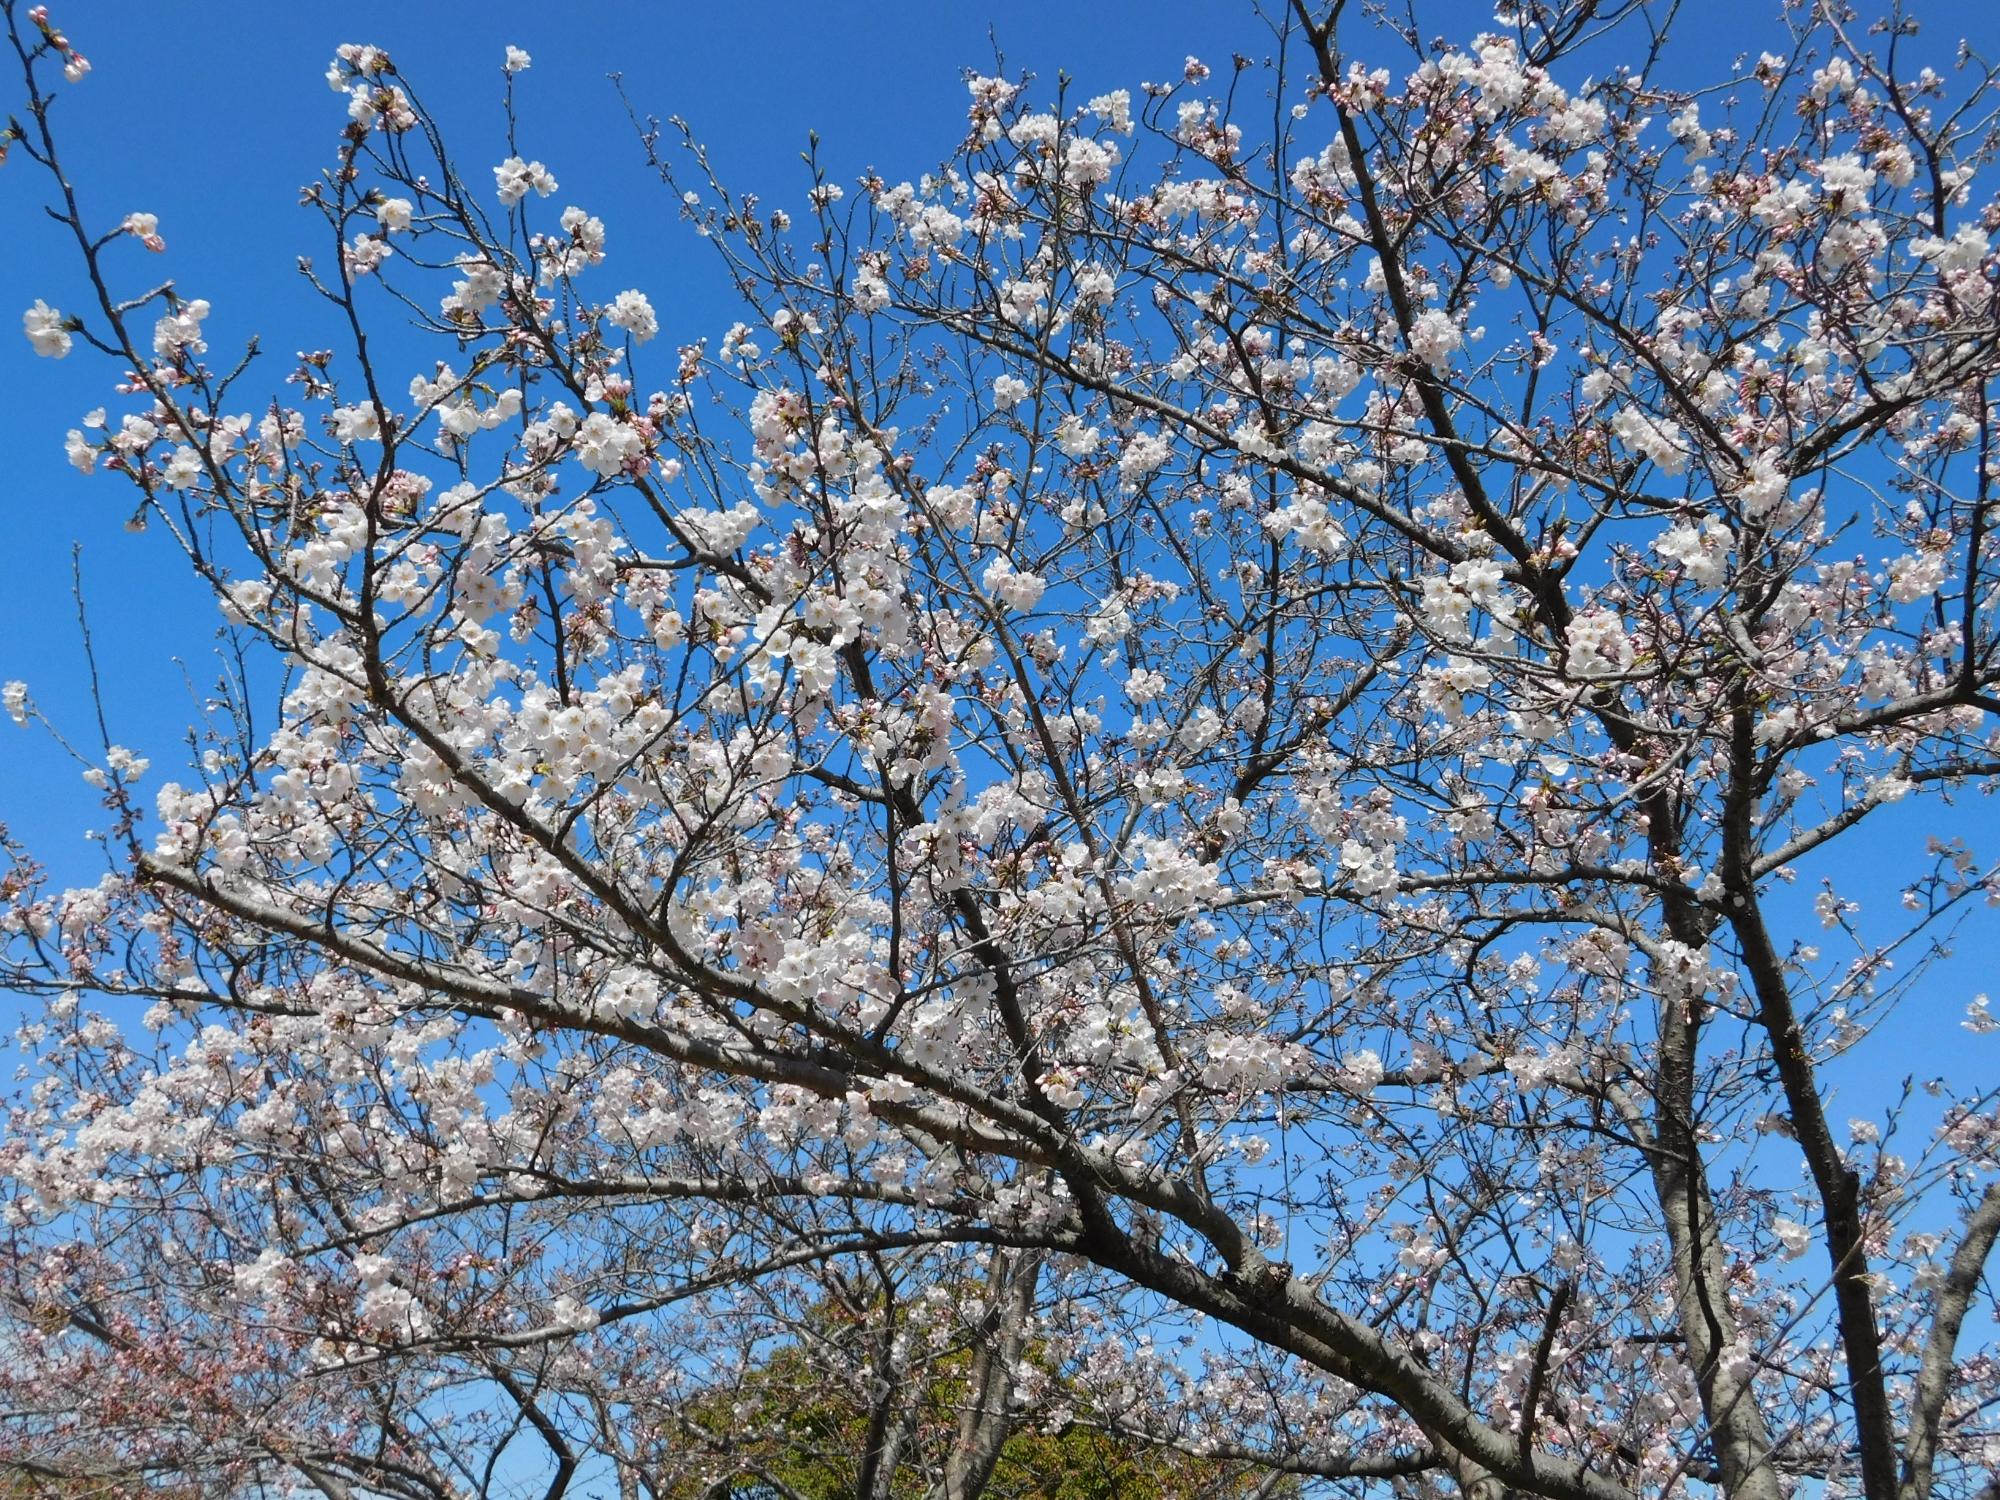 おもしろサイクル付近のソメイヨシノが見頃となっています。東出入口付近の例年桜の花のトンネルの所は今週末あたりが見頃になるでしょう。